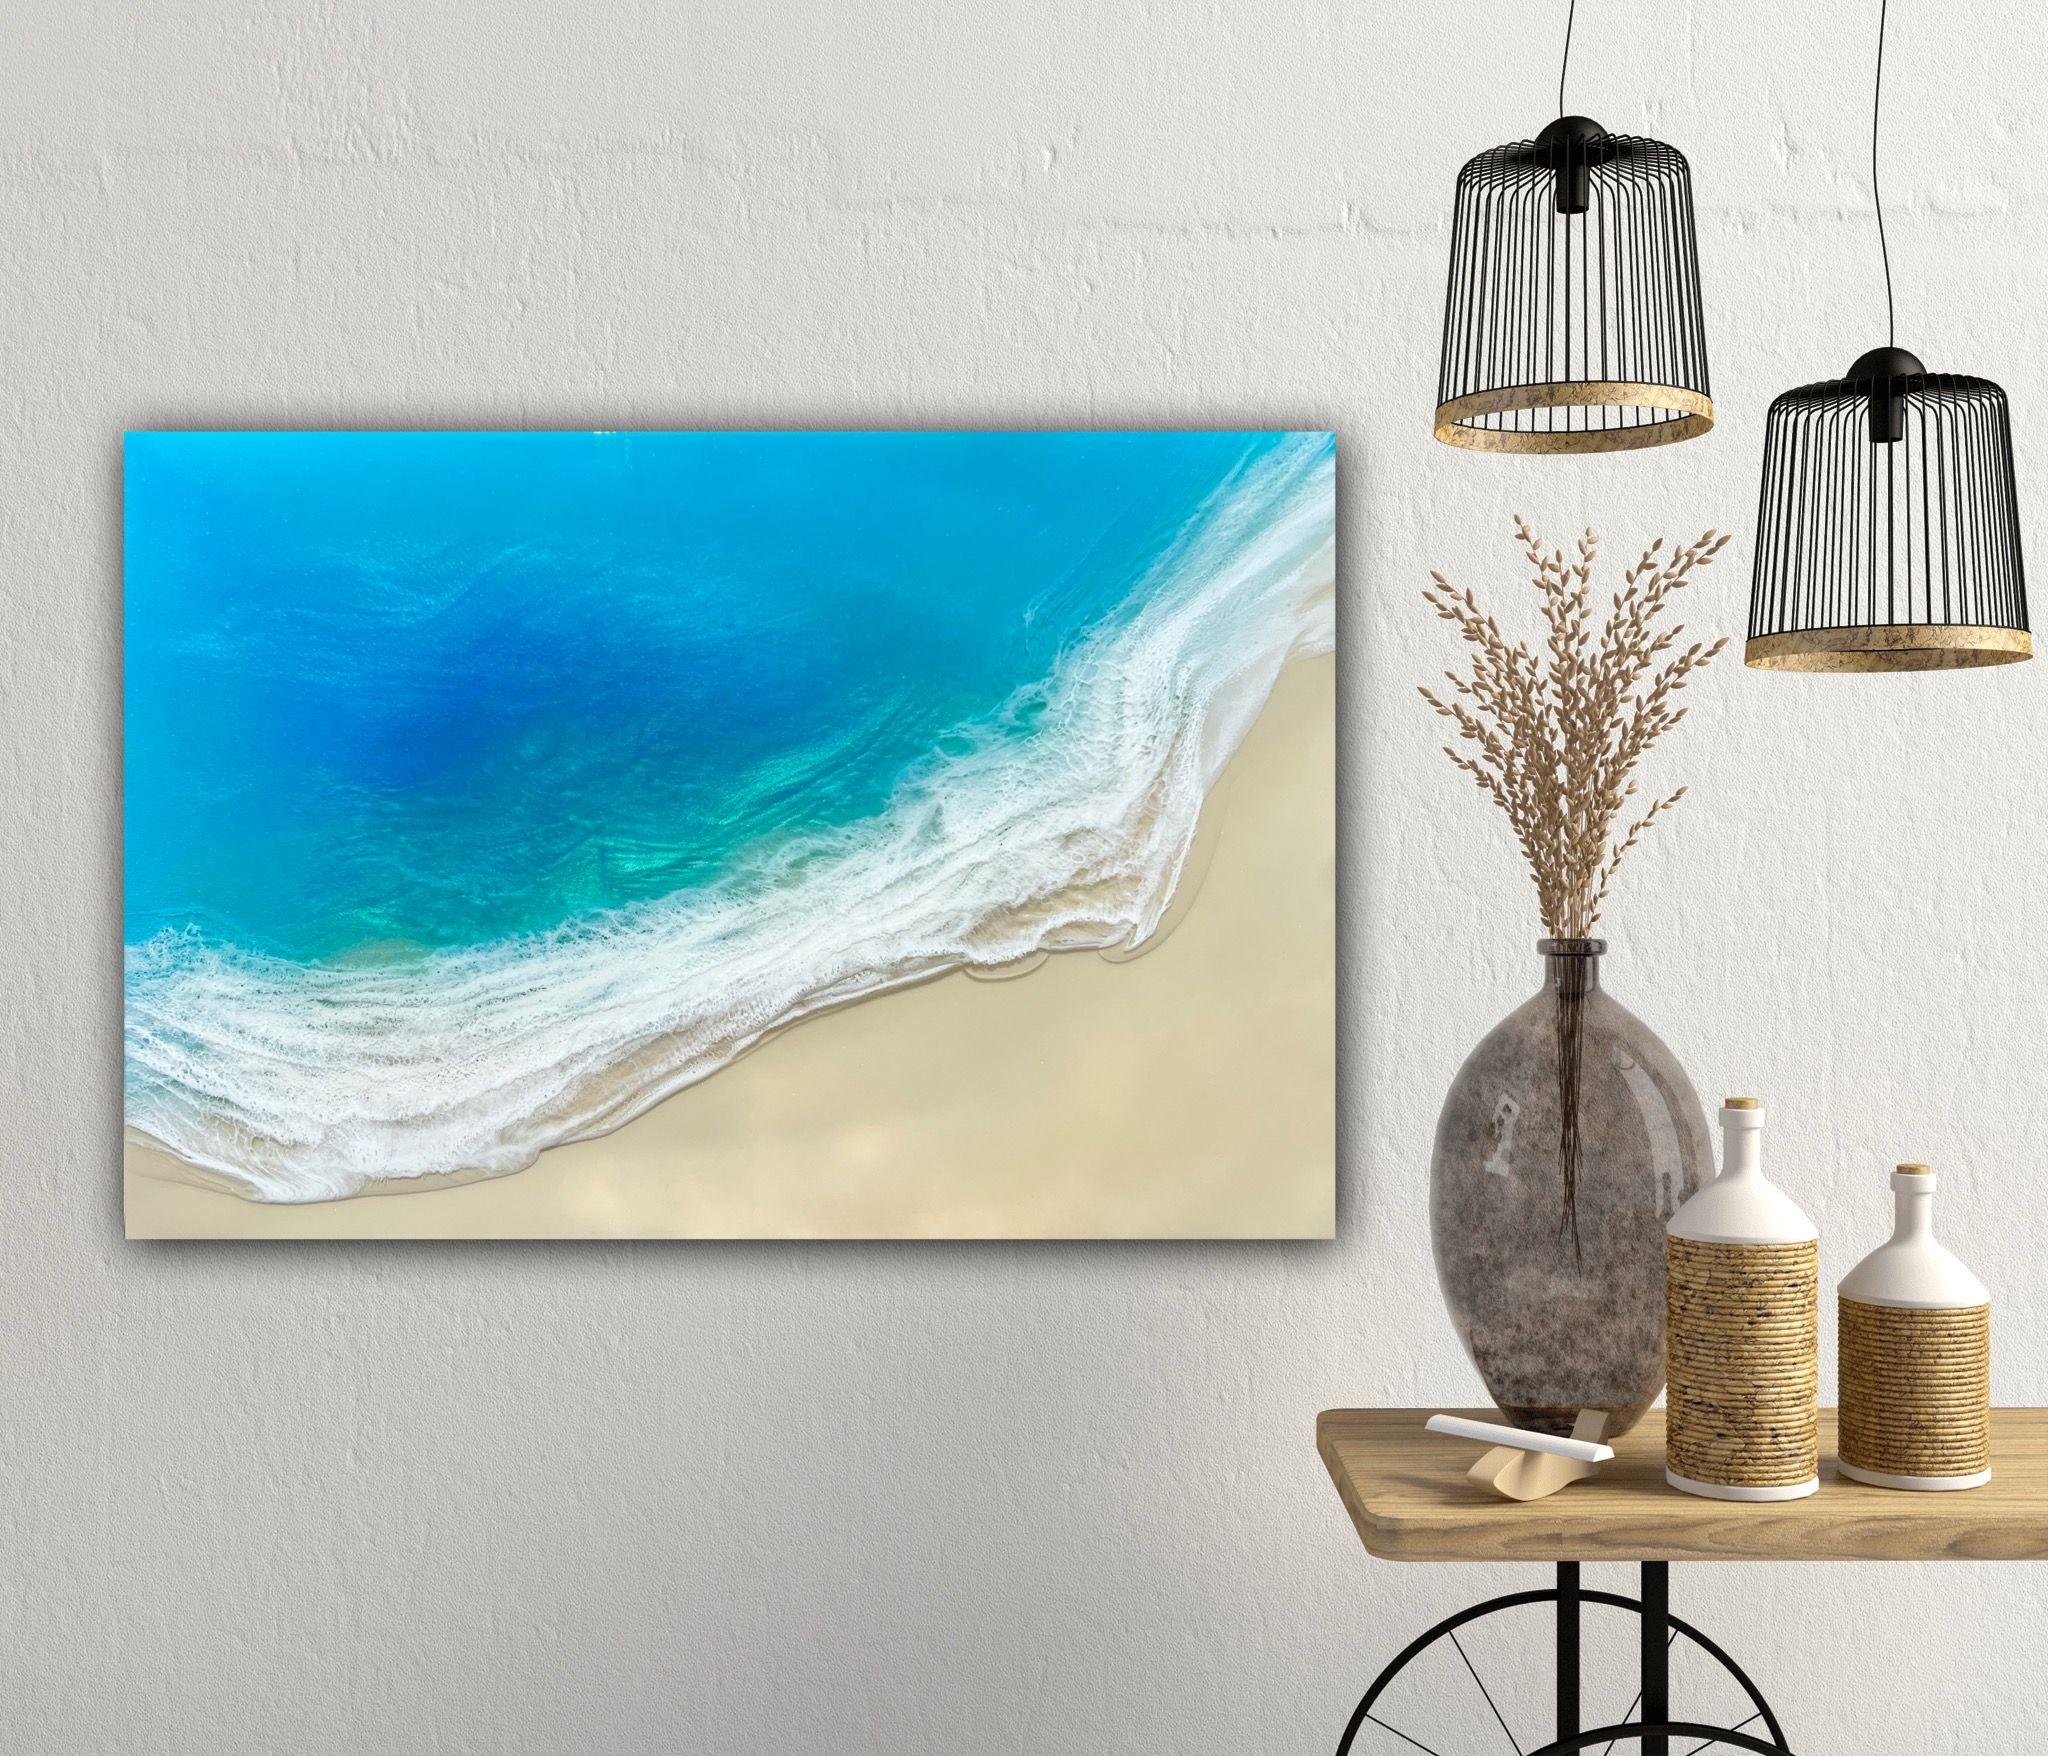 Peinture de paysage marin de sable blanc - peinture de l'océan    Original, unique en son genre, peint à la main, inspiré de la vue des Bahamas et des îles Turks et Caicos vue de l'avion lors de mes dernières vacances là-bas.    Différentes nuances